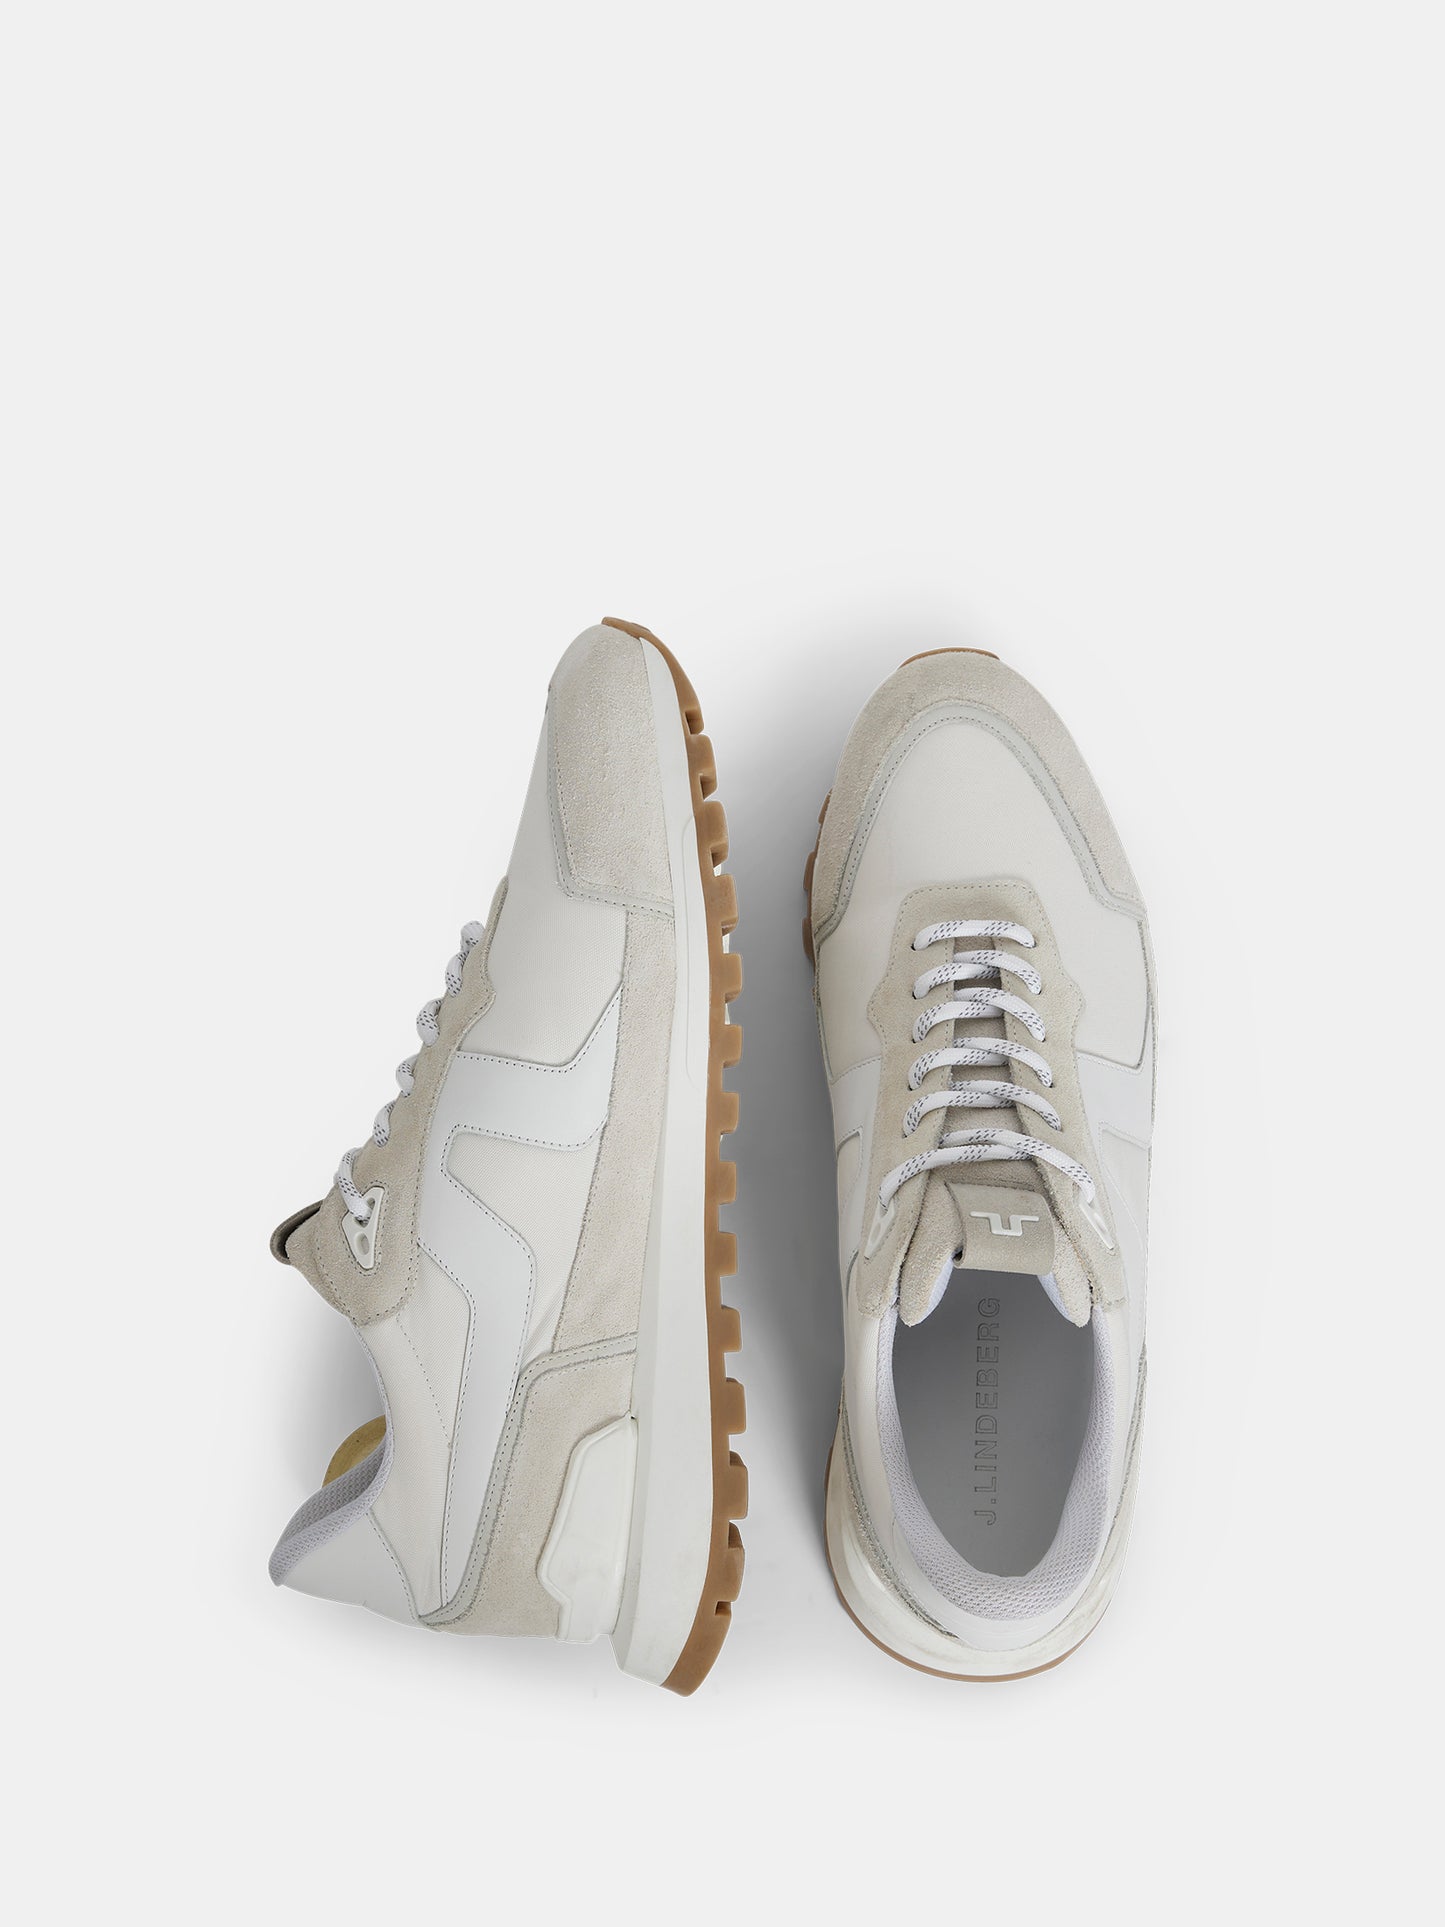 Bridge Runner Sneaker / Cloud White